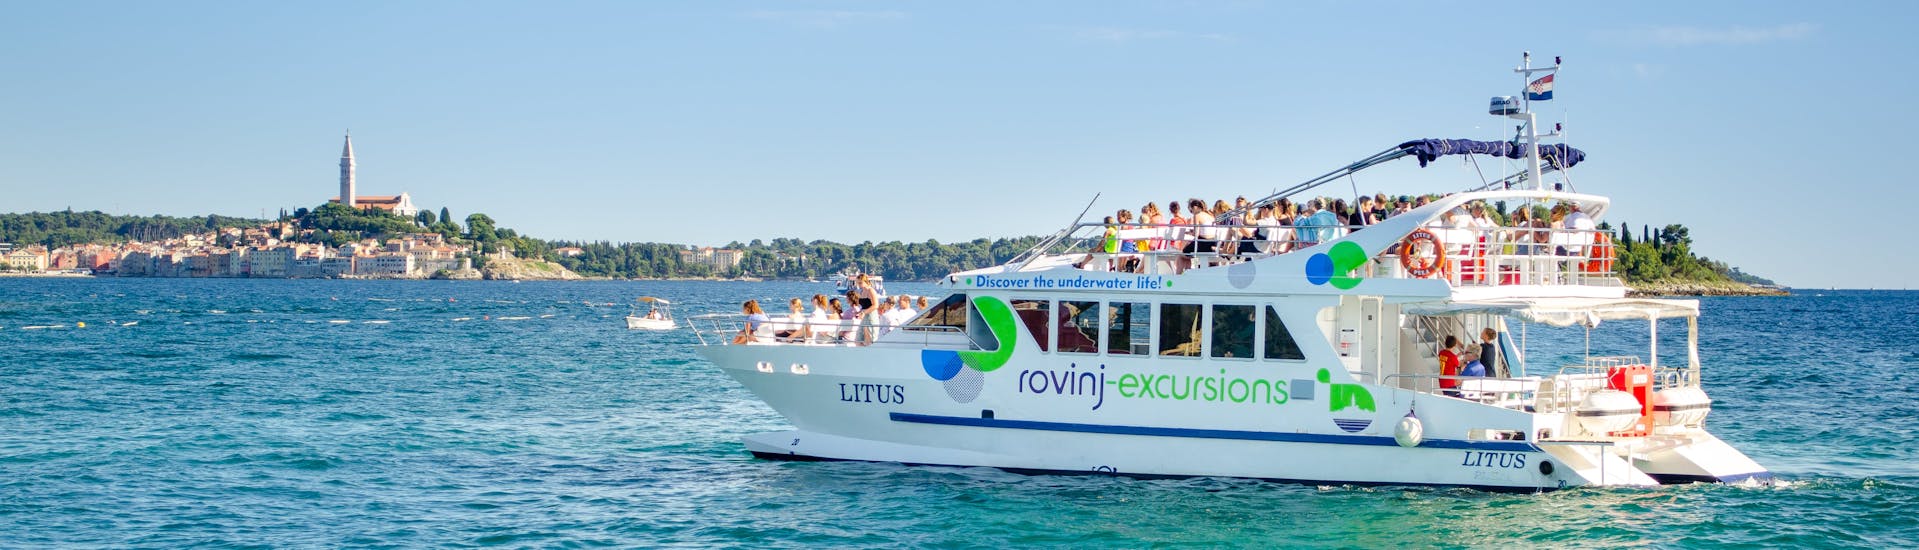 De catamaran LITUS in het kristalheldere water van Istrië tijdens de dagexcursie per catamaran naar Vrsar en Lim Fjord met Rovinj Excursions.